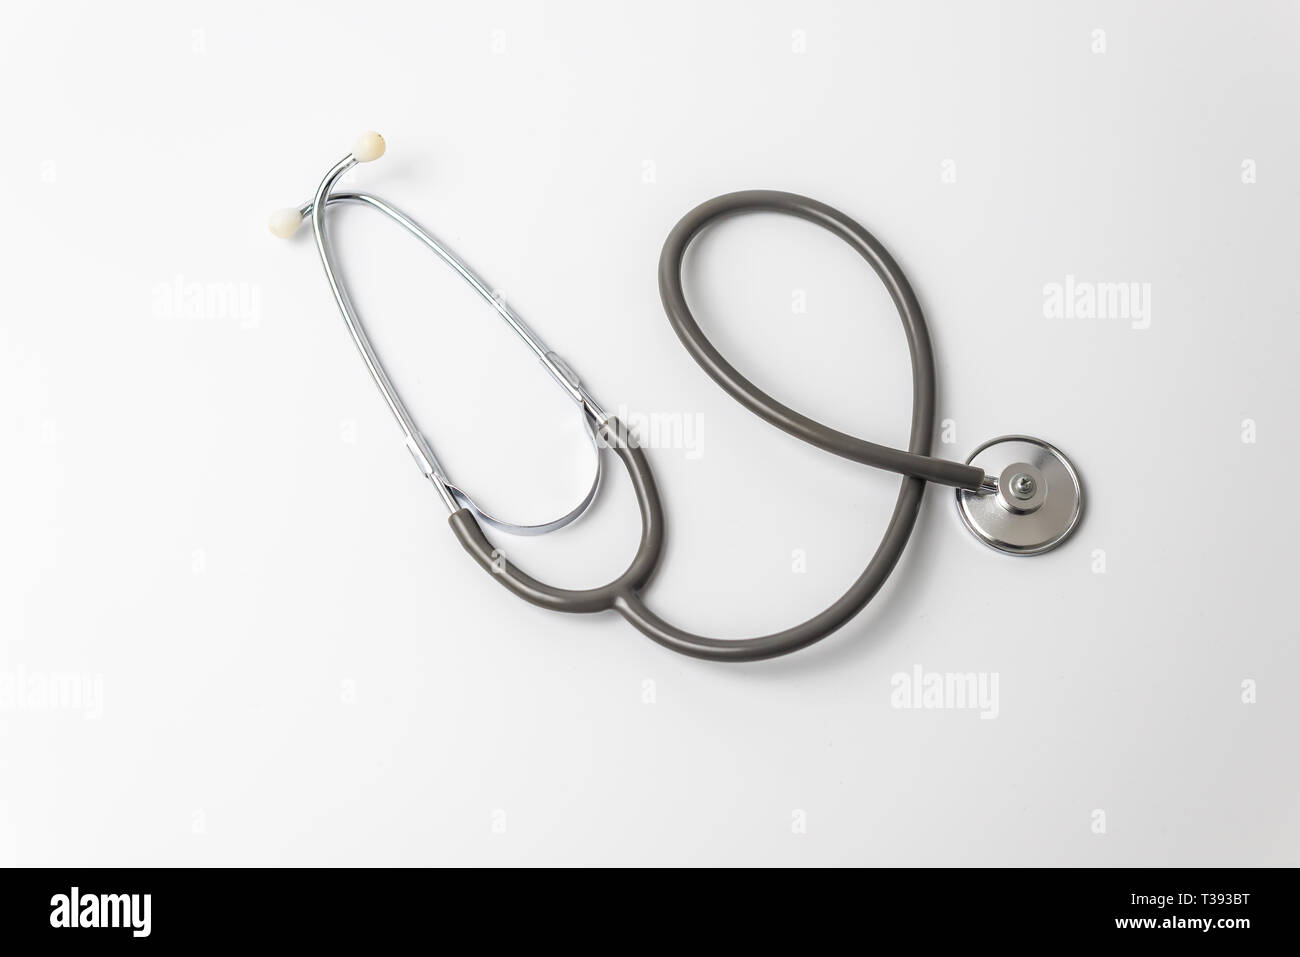 Uno stetoscopio isolati su sfondo bianco . Immagine dettagliata della strumentazione medica Foto Stock